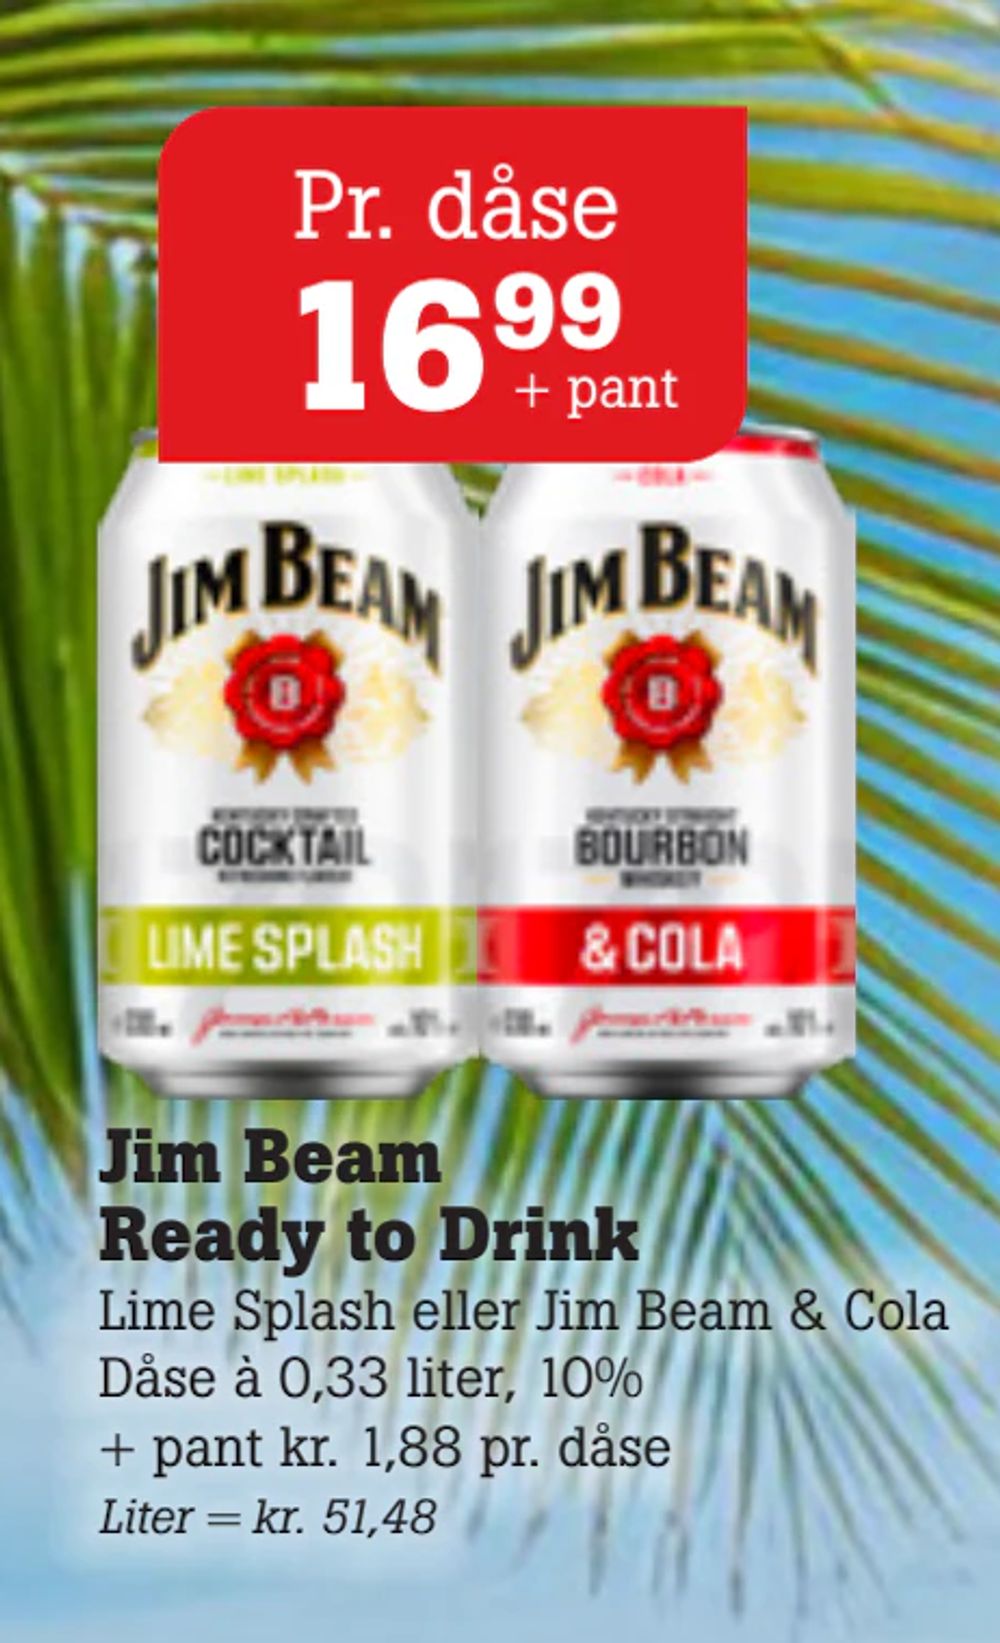 Tilbud på Jim Beam Ready to Drink fra Poetzsch Padborg til 16,99 kr.